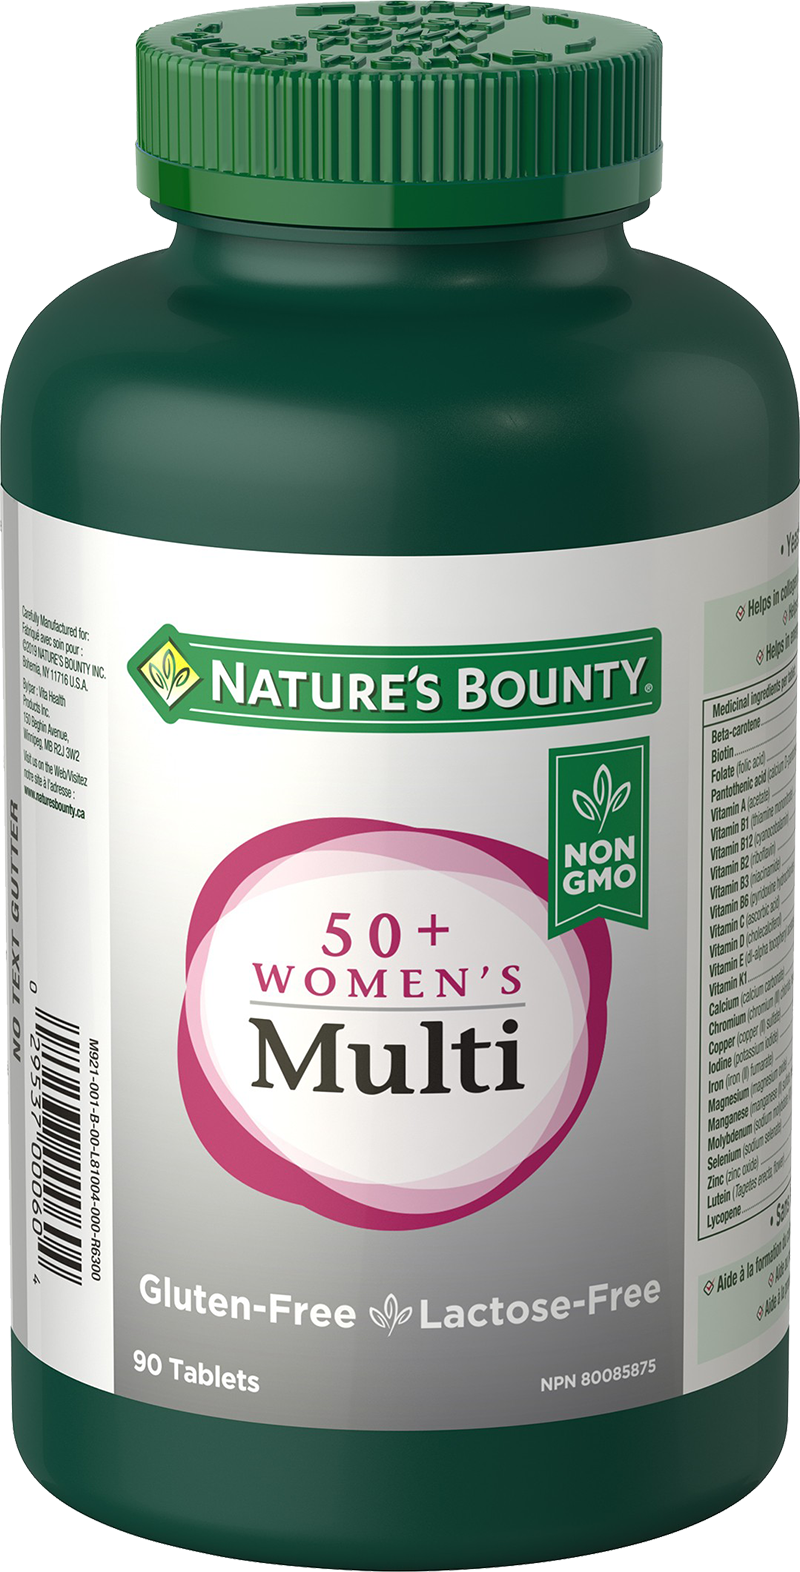 Women's 50+ Multi